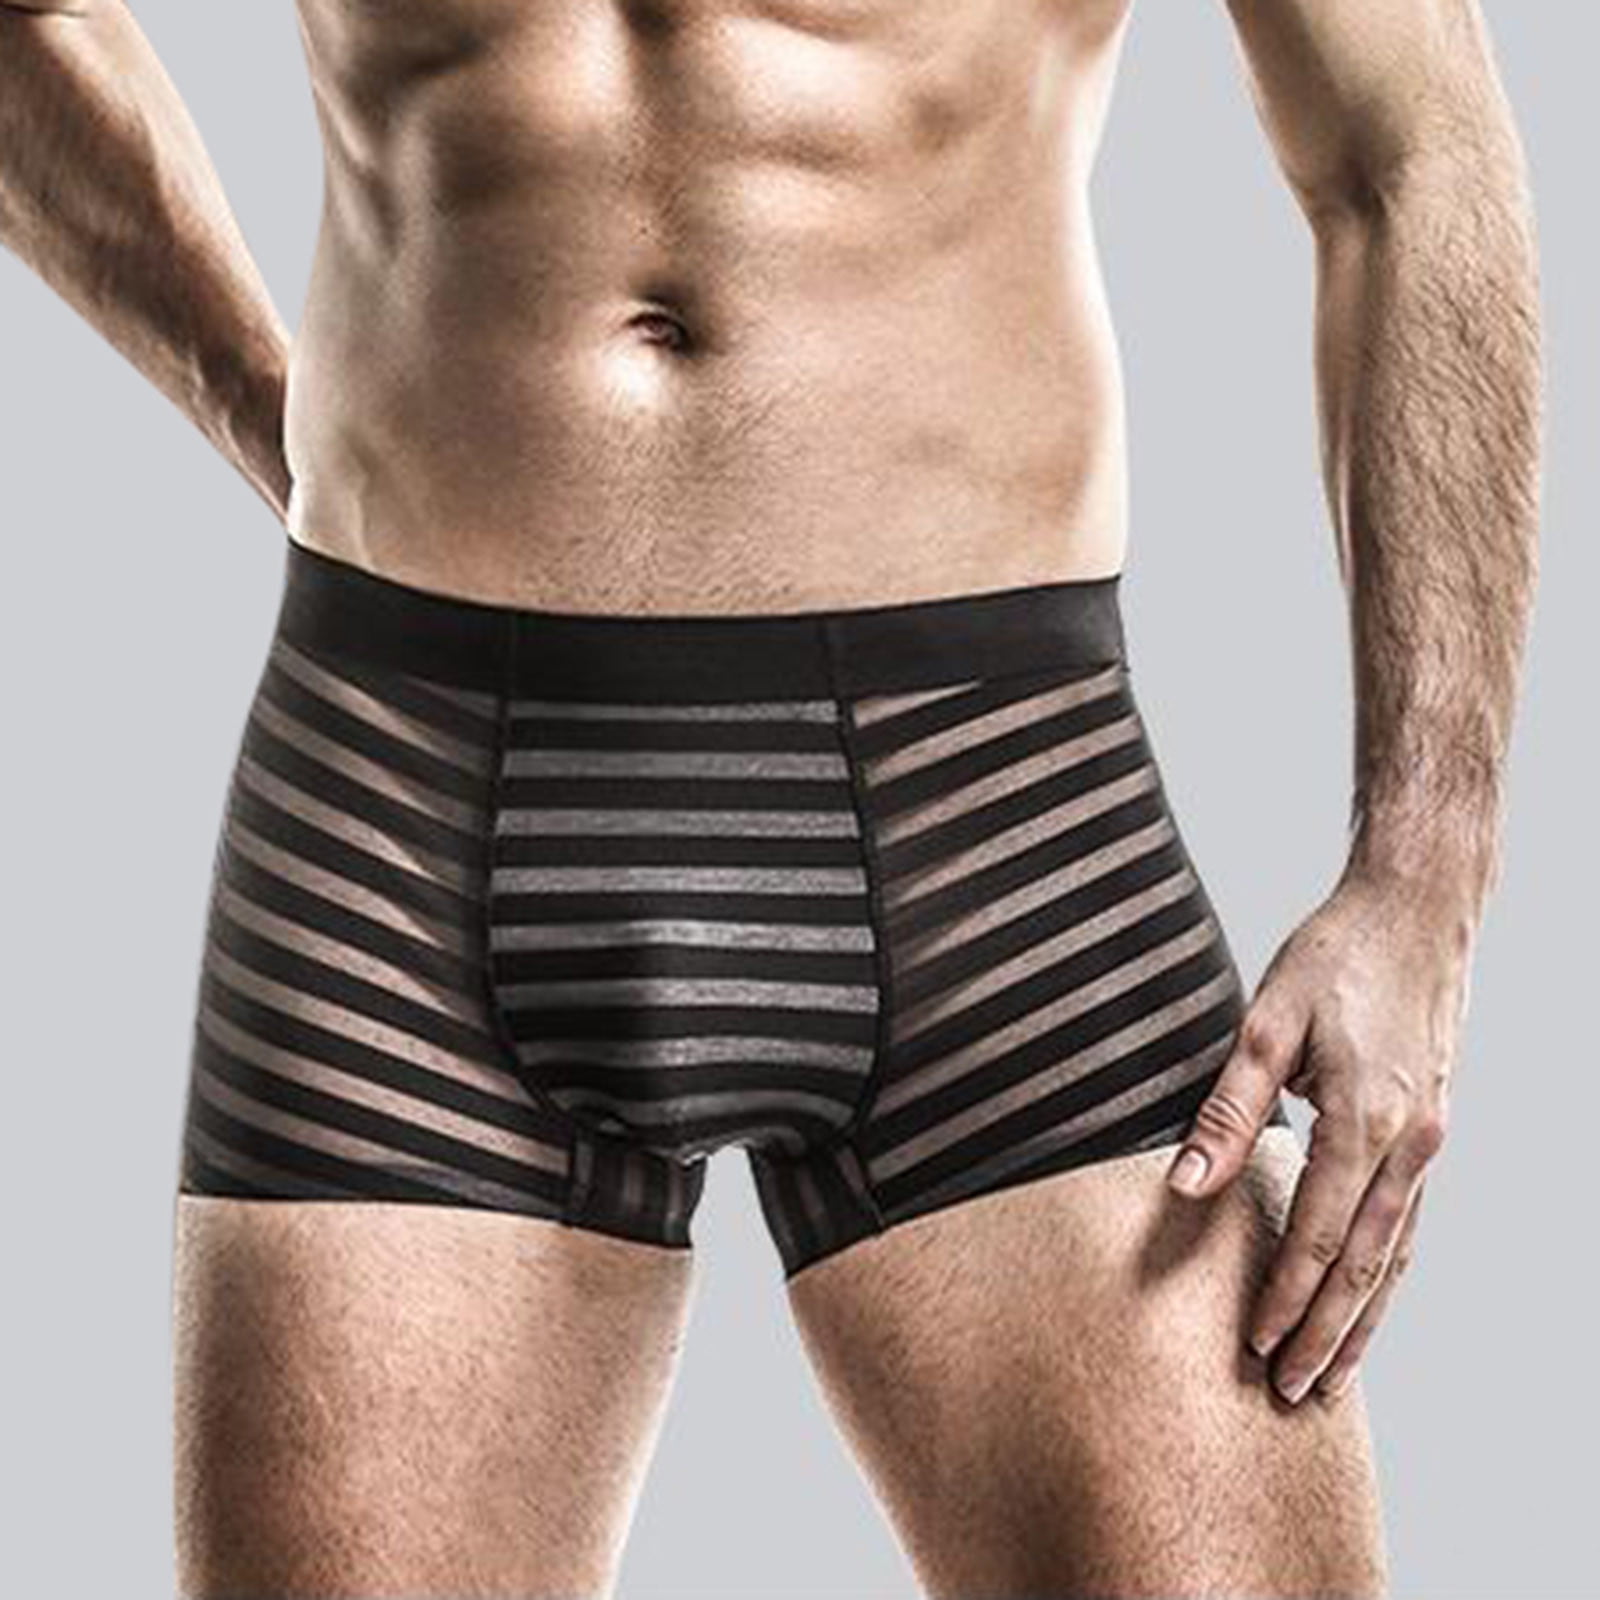 Generic Men's Mesh Power Net Transparent Sexy Brief Underwear